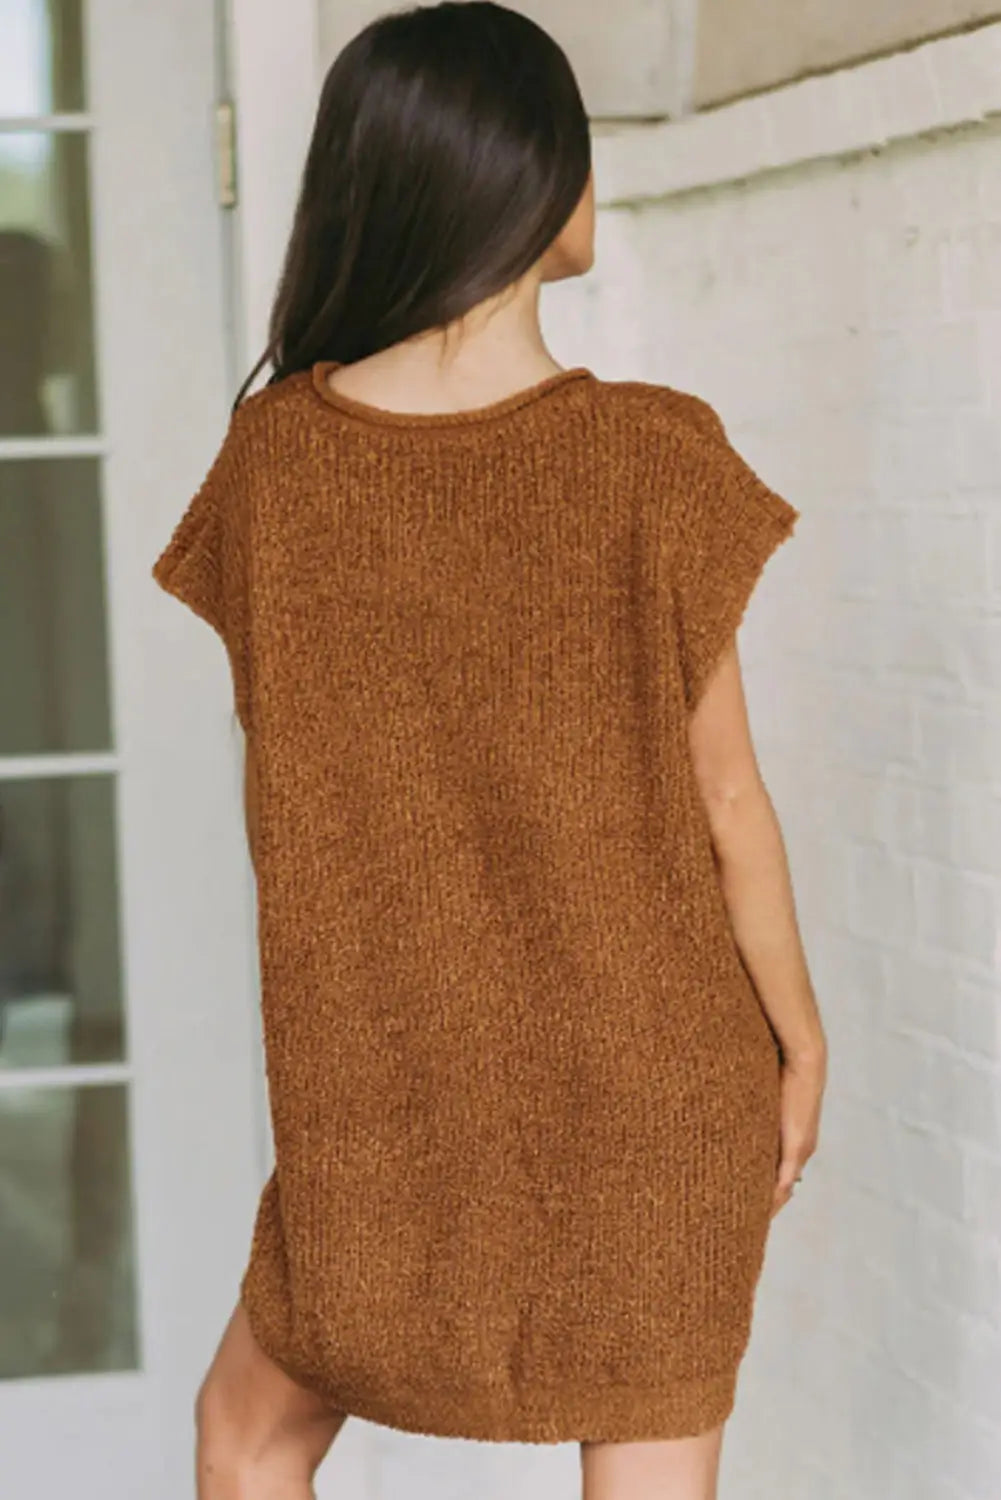 Camel short sleeve notched v neck sweater dress - dresses